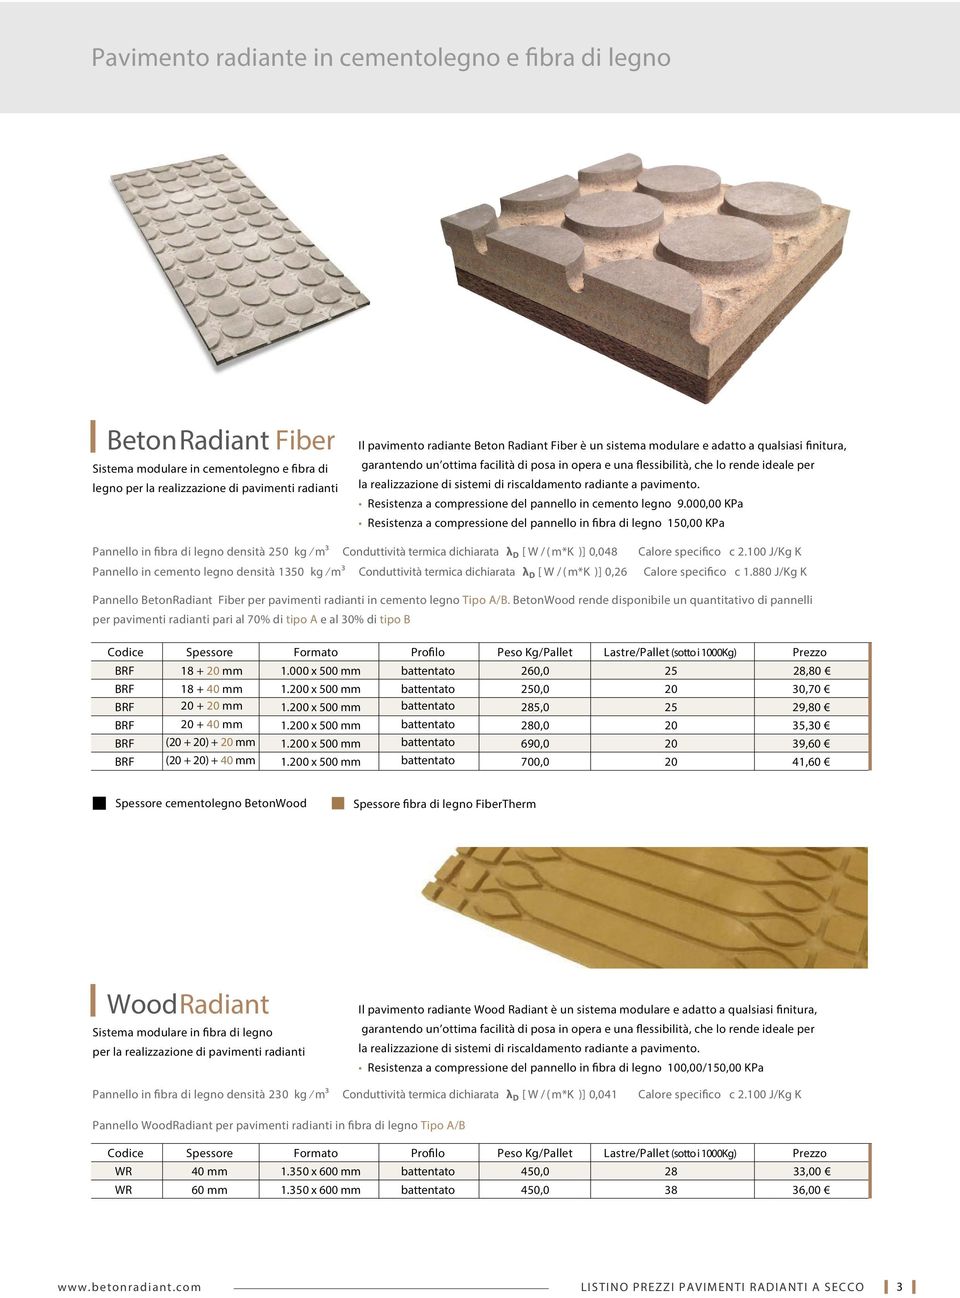 Pannello in cemento legno densità 1350 kg m³ Conduttività termica dichiarata λ D [ W / ( m*k )] 0,26 Calore specifico c 2.100 J/Kg K Calore specifico c 1.